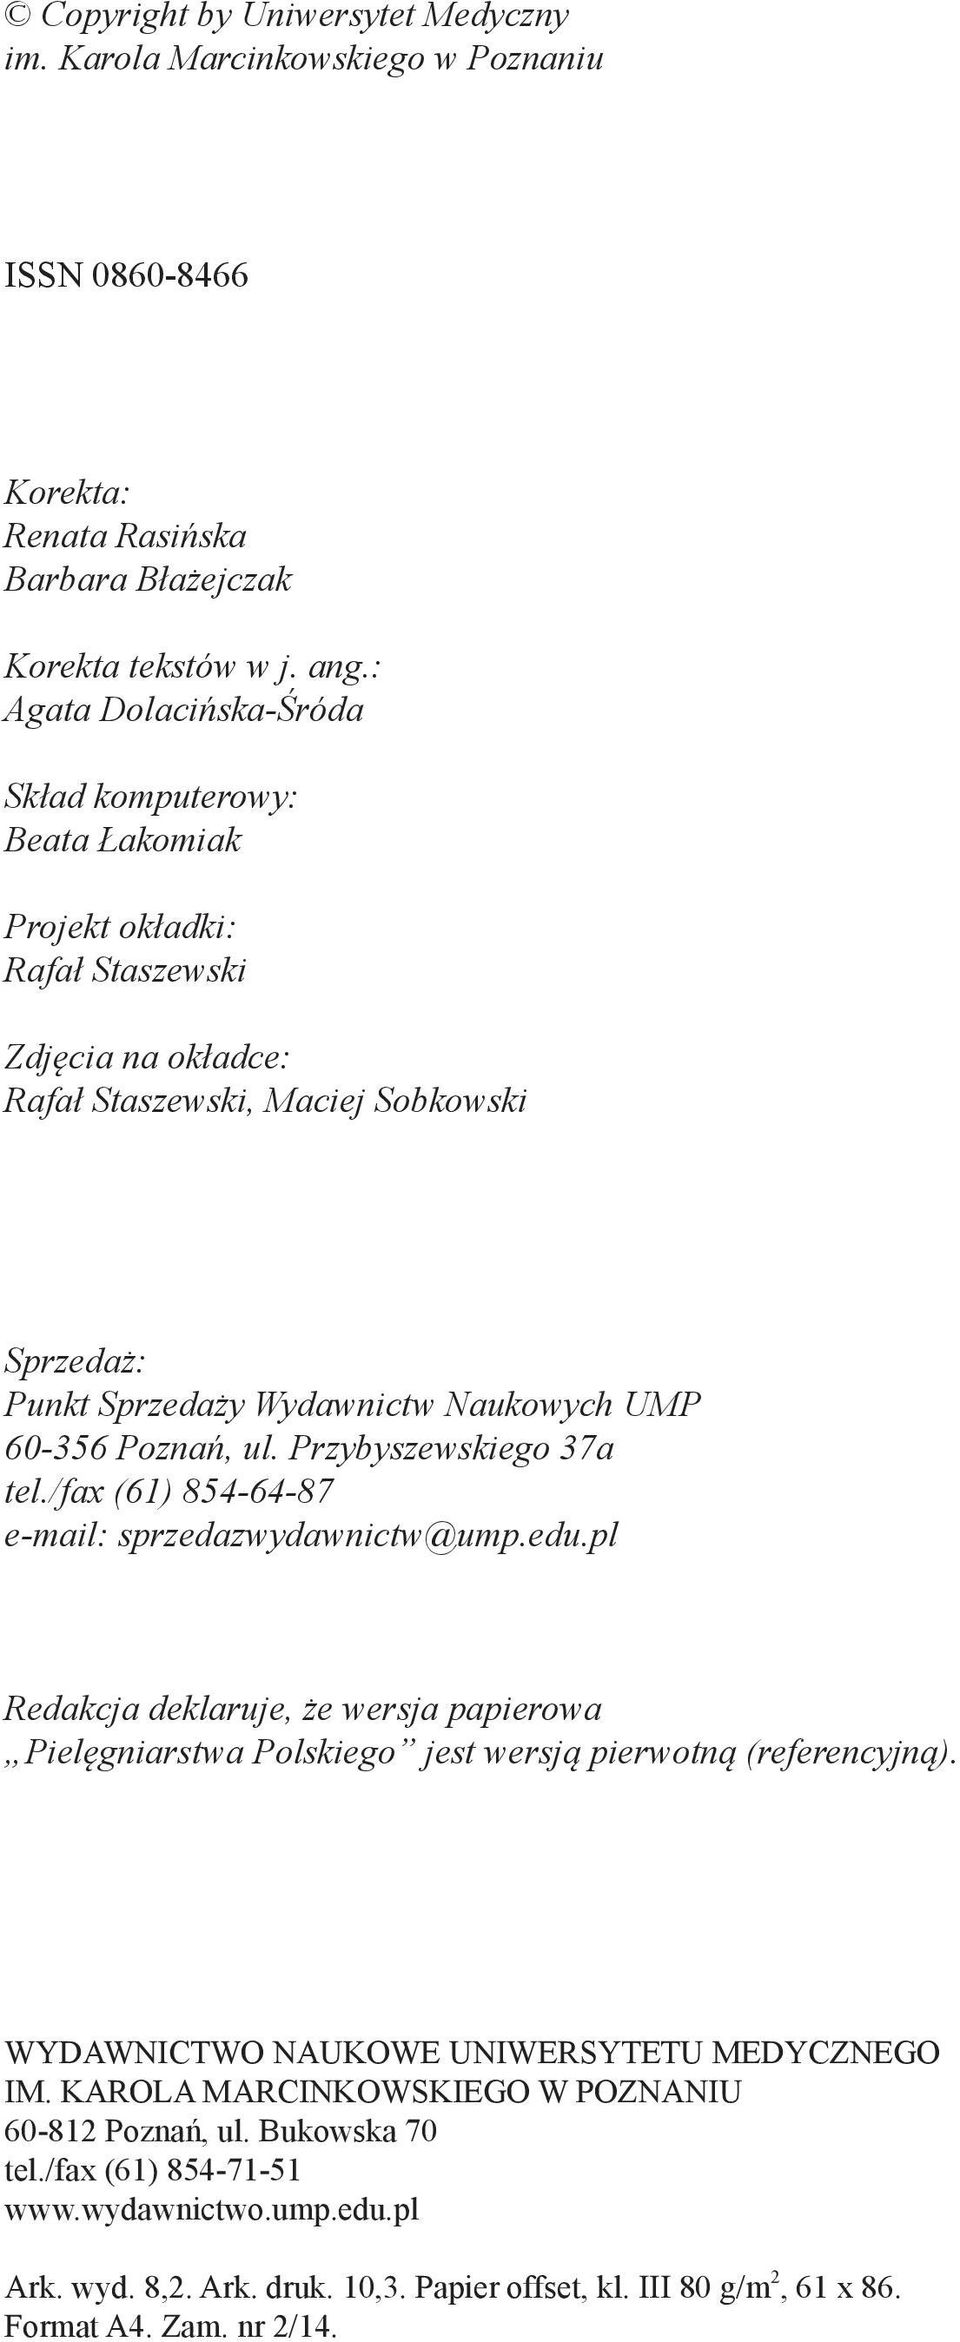 60-356 Poznań, ul. Przybyszewskiego 37a tel./fax (61) 854-64-87 e-mail: sprzedazwydawnictw@ump.edu.